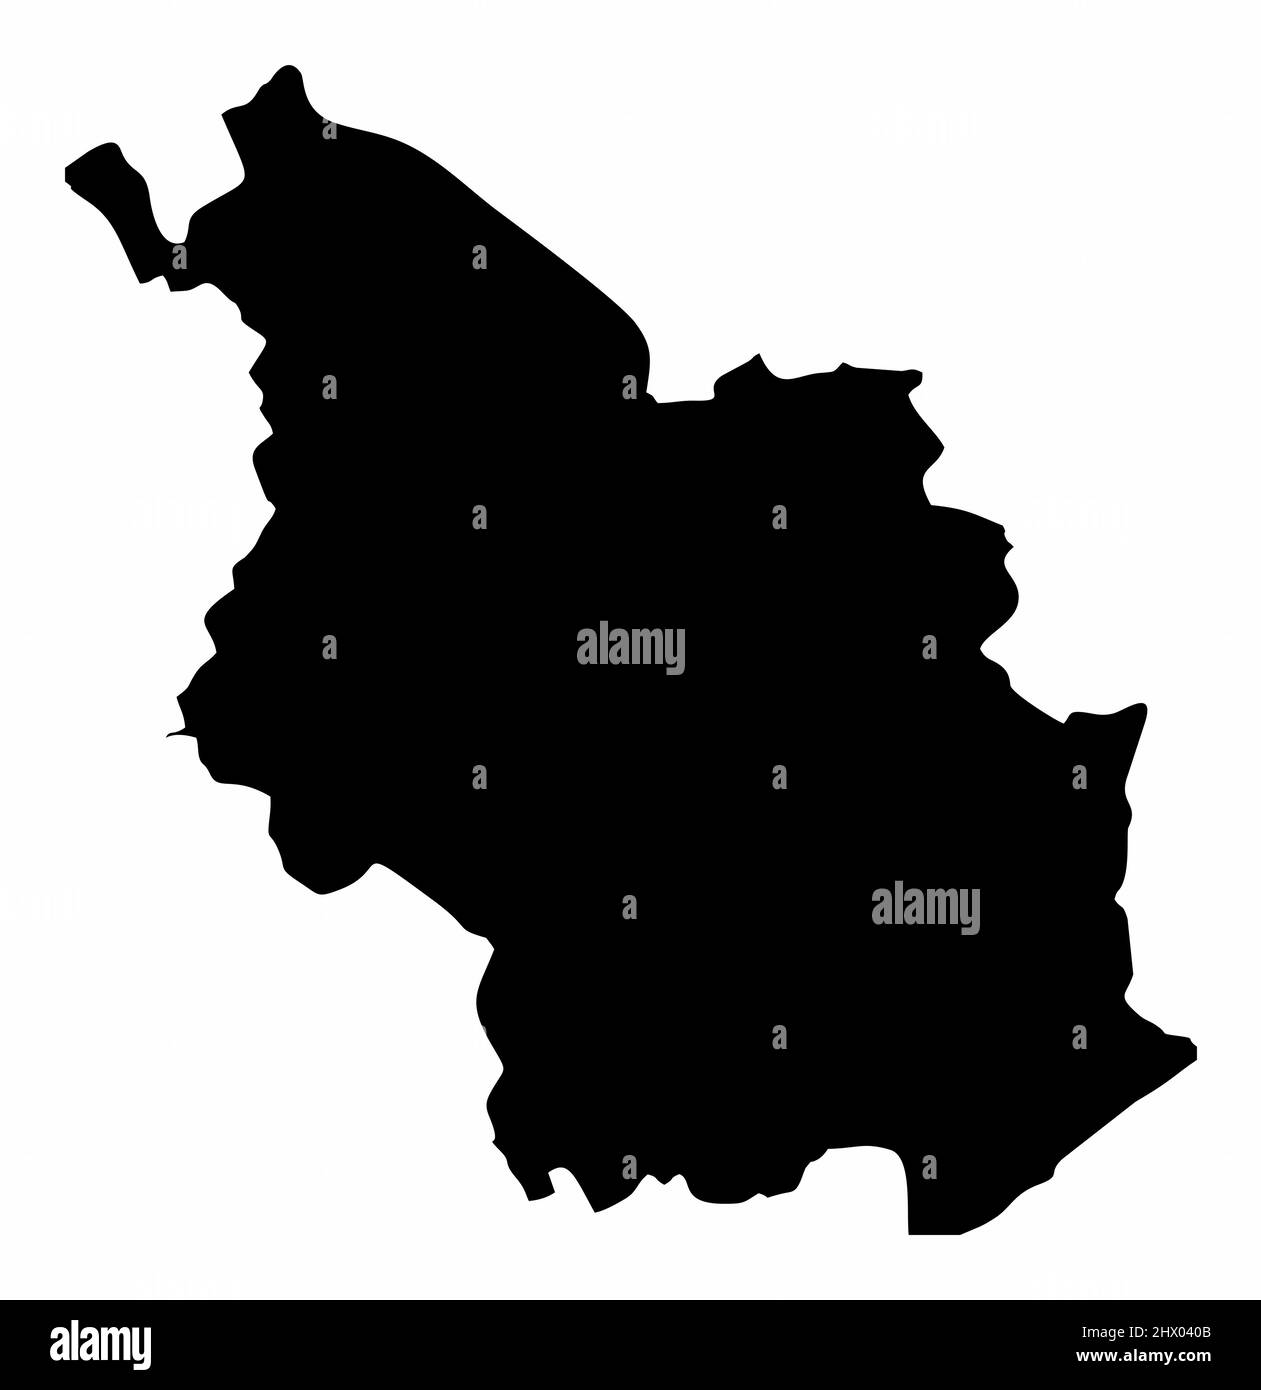 Köln Stadt, Silhouette Karte isoliert auf weißem Hintergrund, Deutschland Stock Vektor